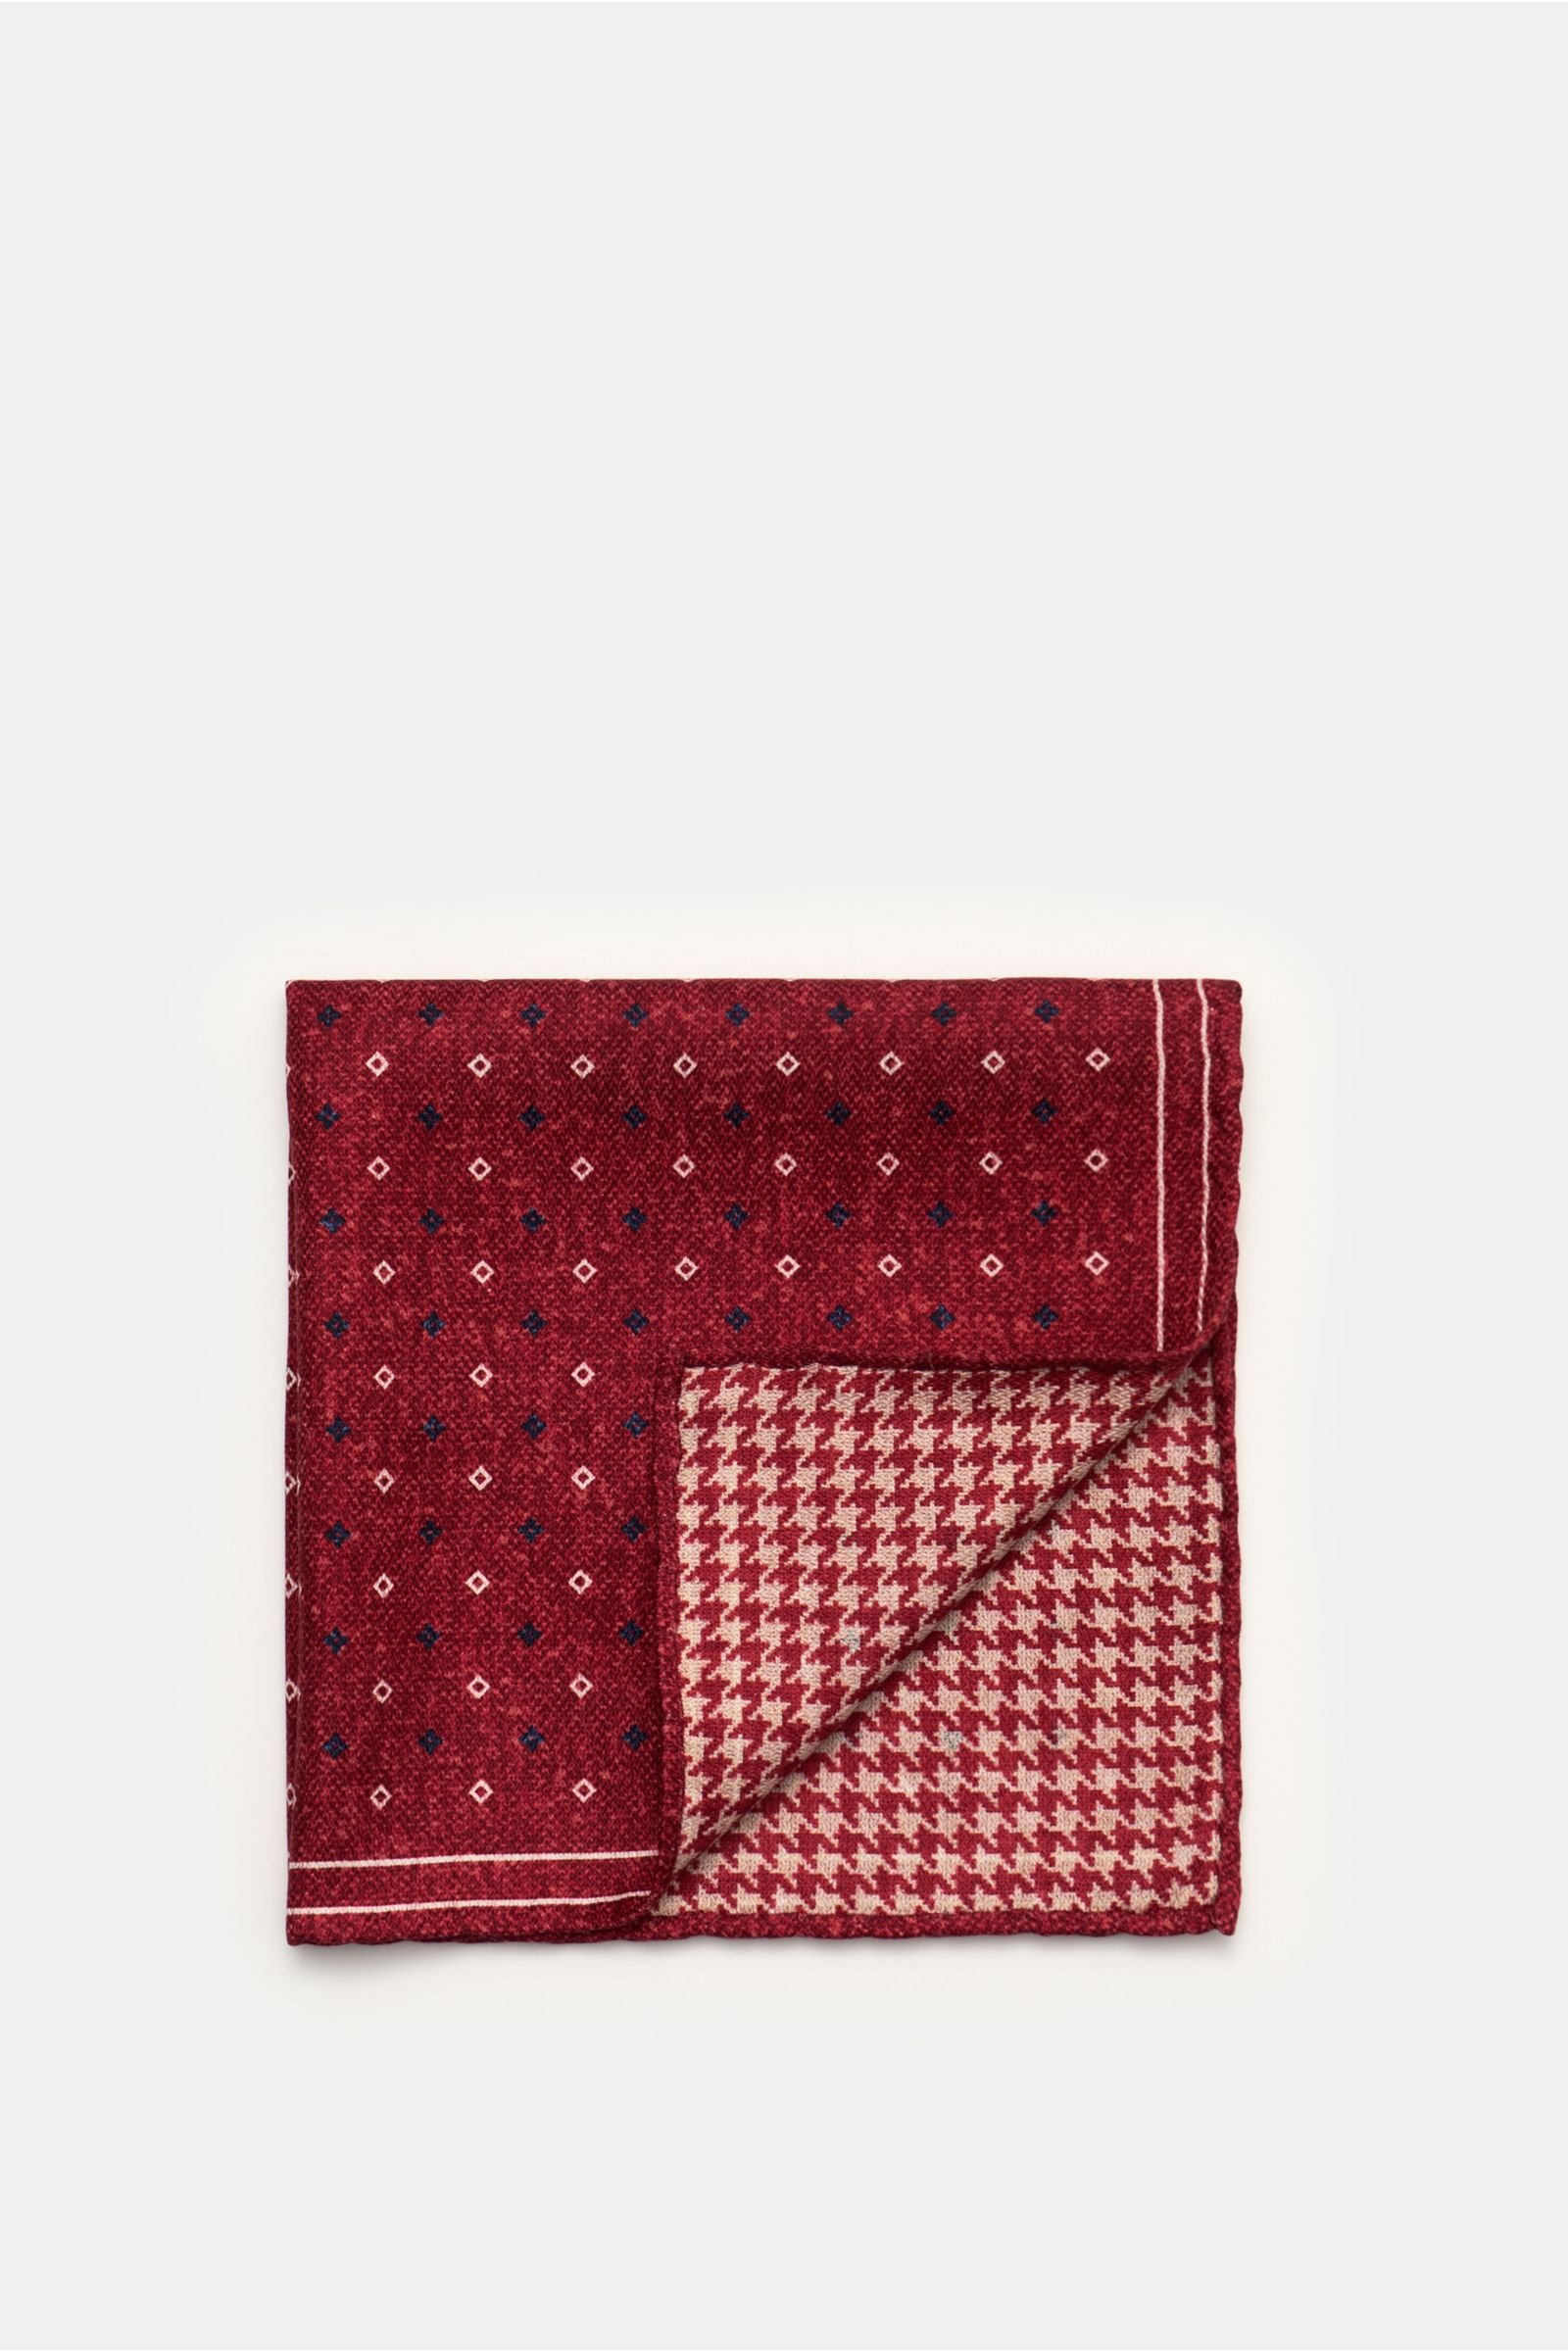 Pocket square burgundy/grey patterned